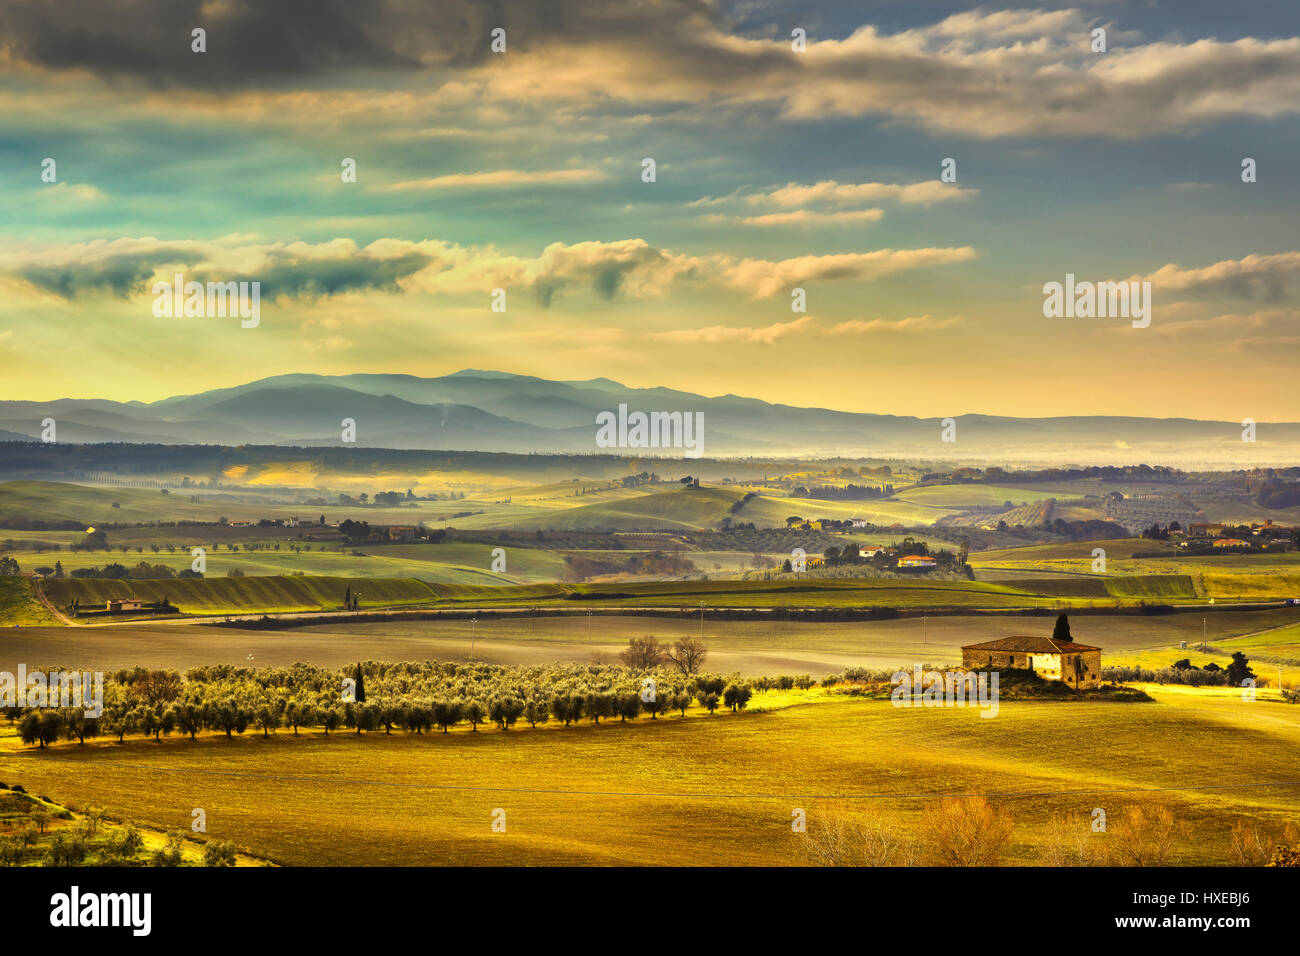 Tuscany Maremma foggy morning, farmland and green fields country landscape. Italy, Europe. Stock Photo